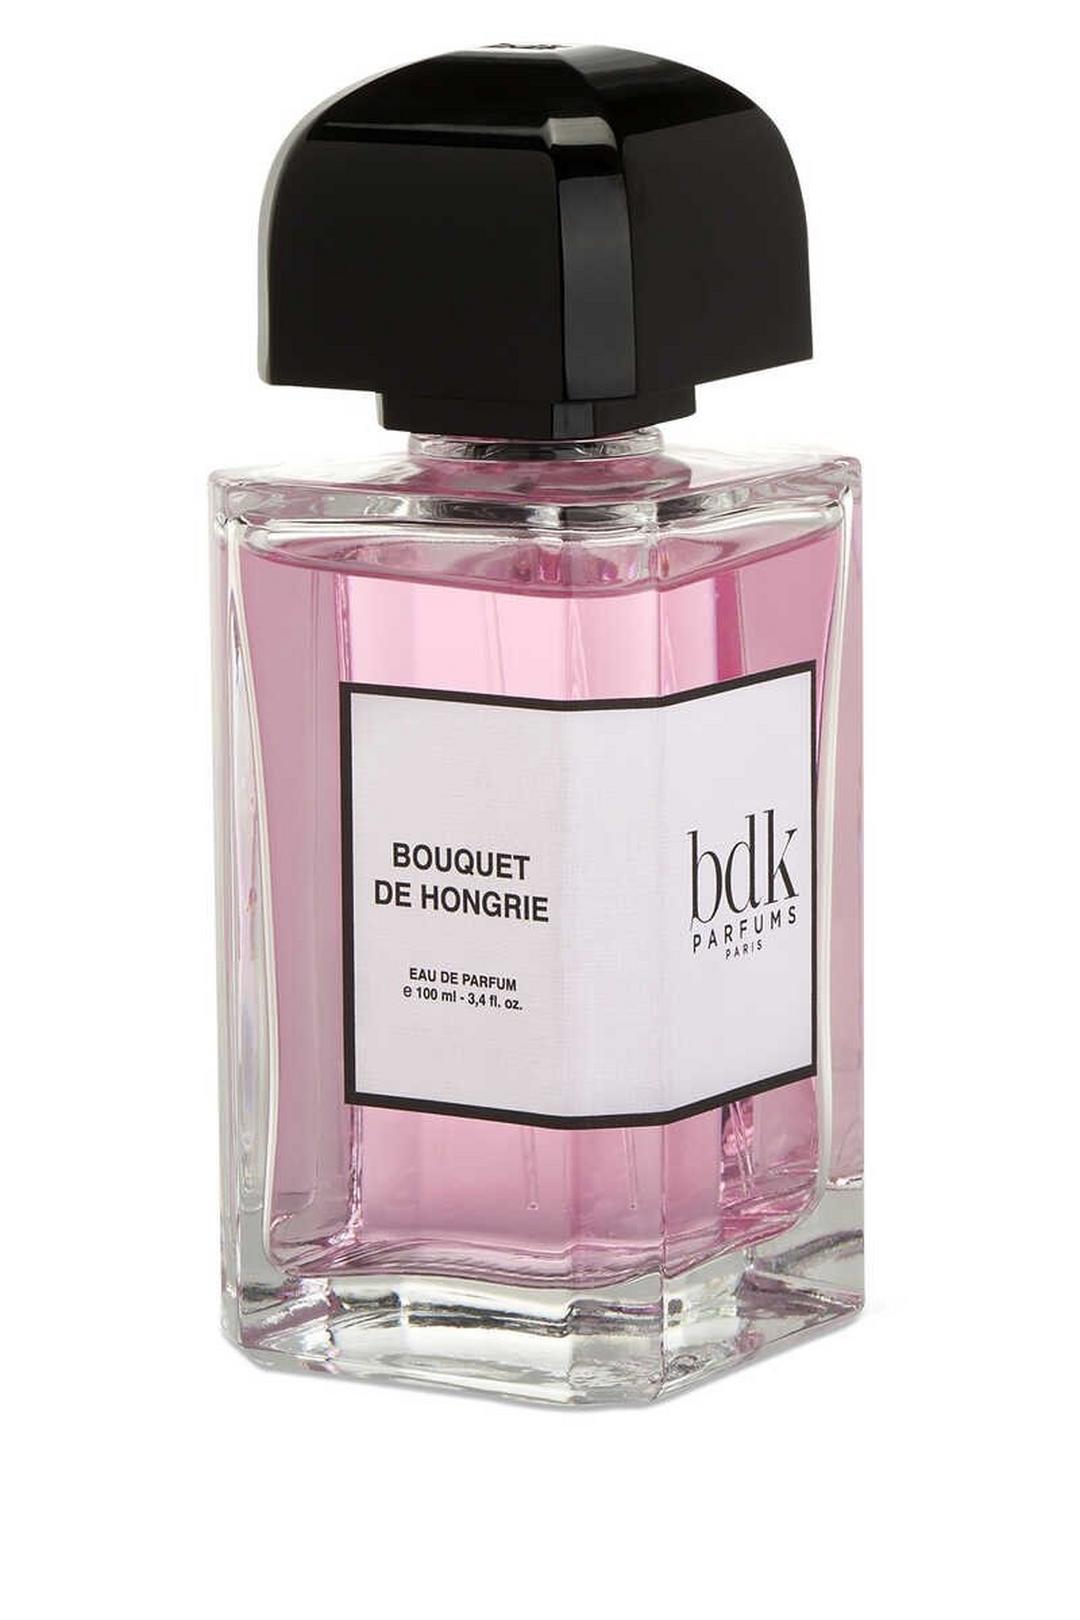 BDK PARFUMS Bouquet De Hongrie - Eau De Parfum 100 ml